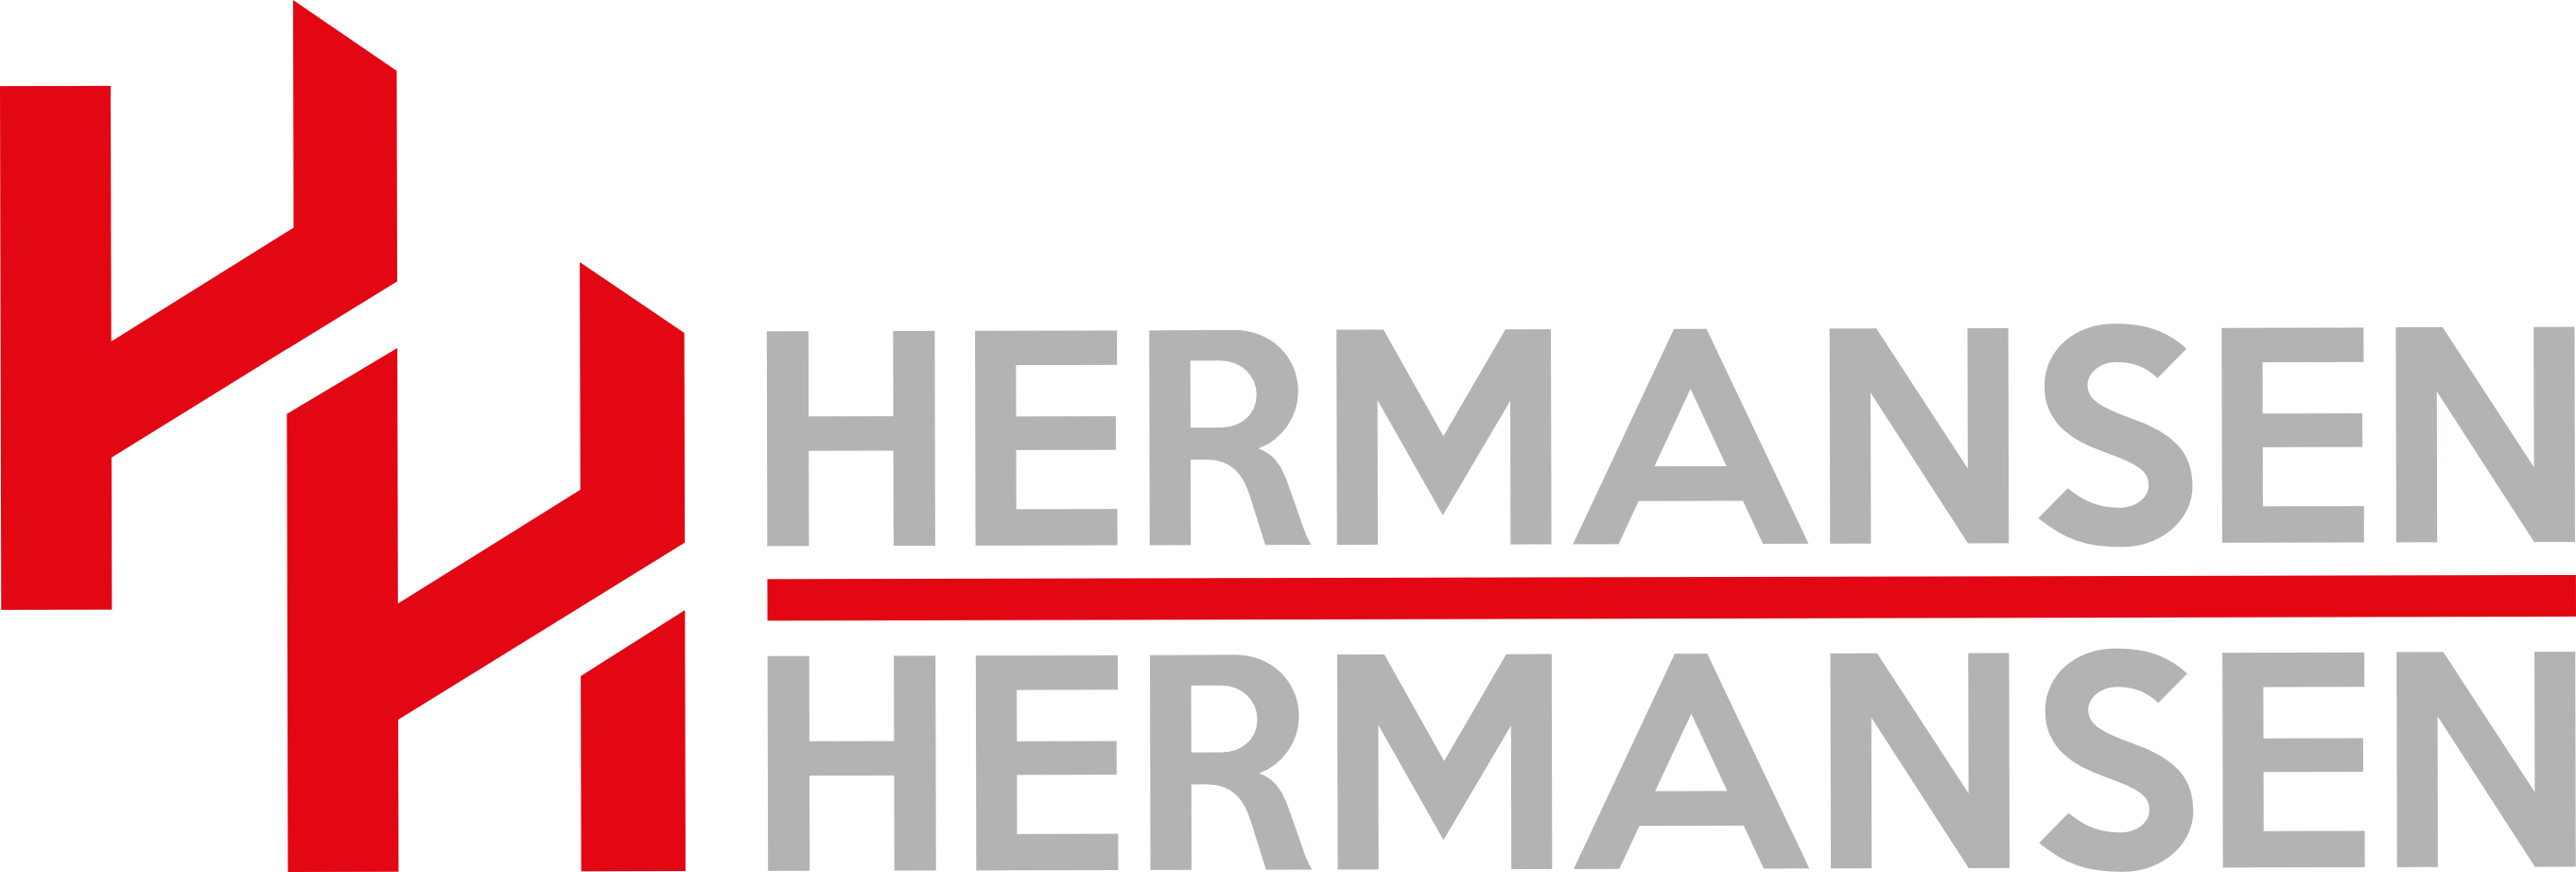 Logopädie Hermansen